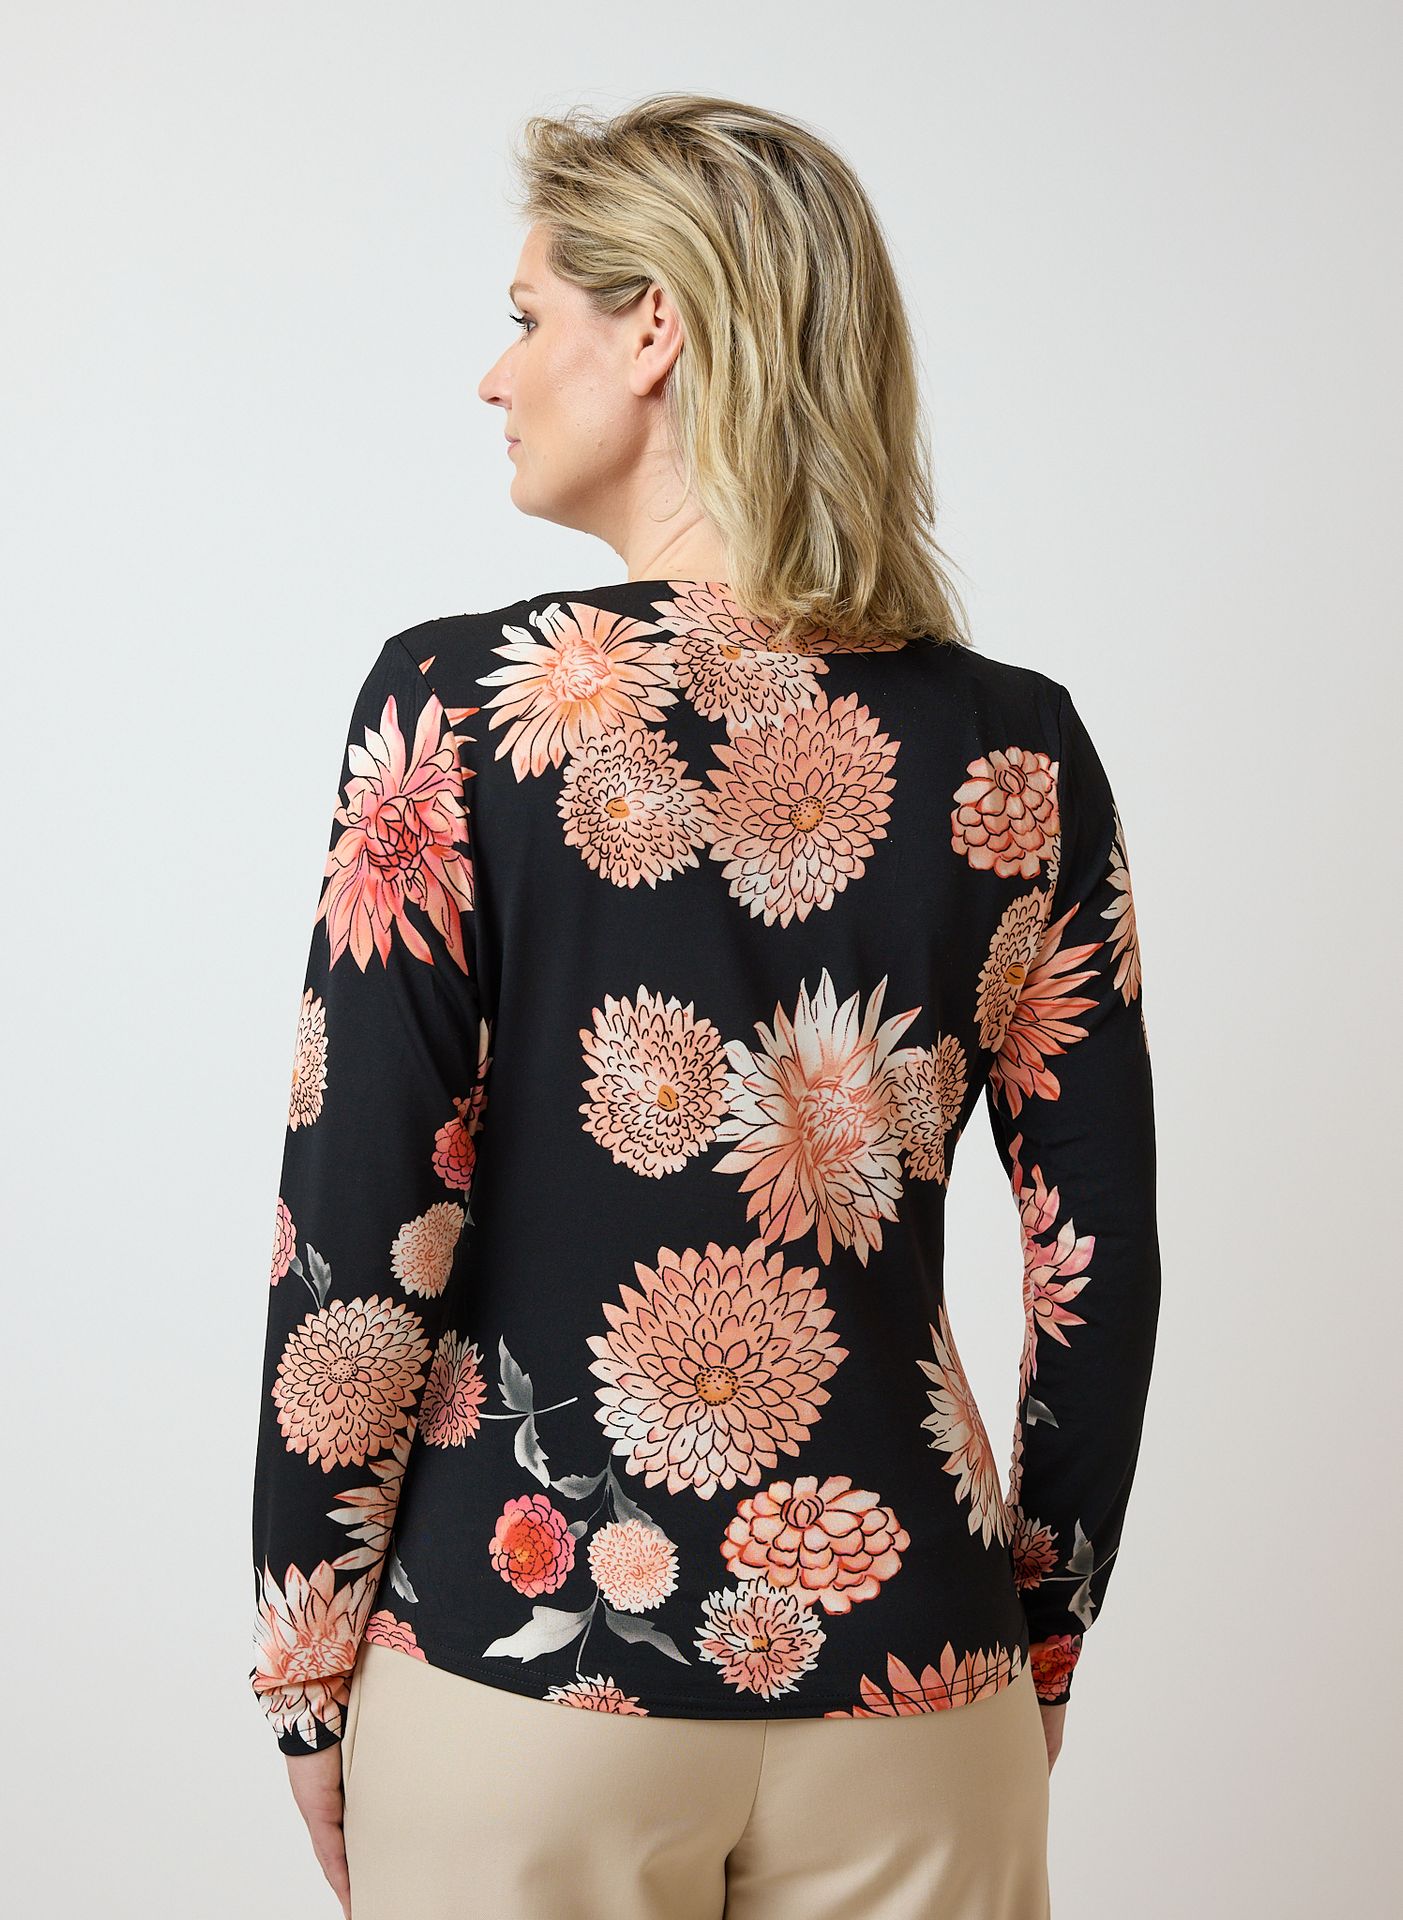 Norah Zwart shirt bloemenprint black multicolor 214052-020